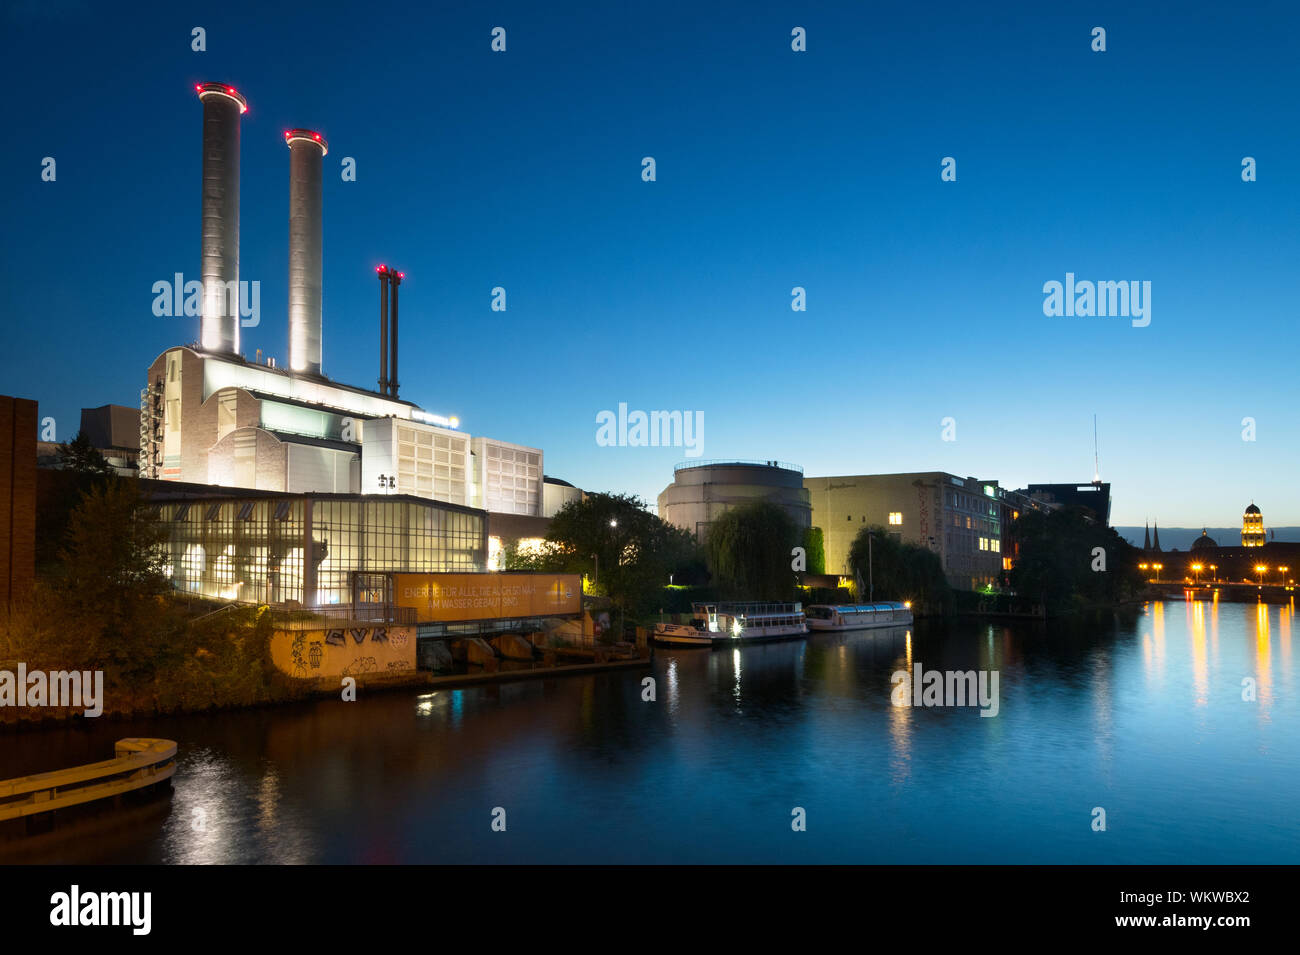 Heizkraftwerk - Brennwert, Berlin-Mitte, Deutschland Stockfoto